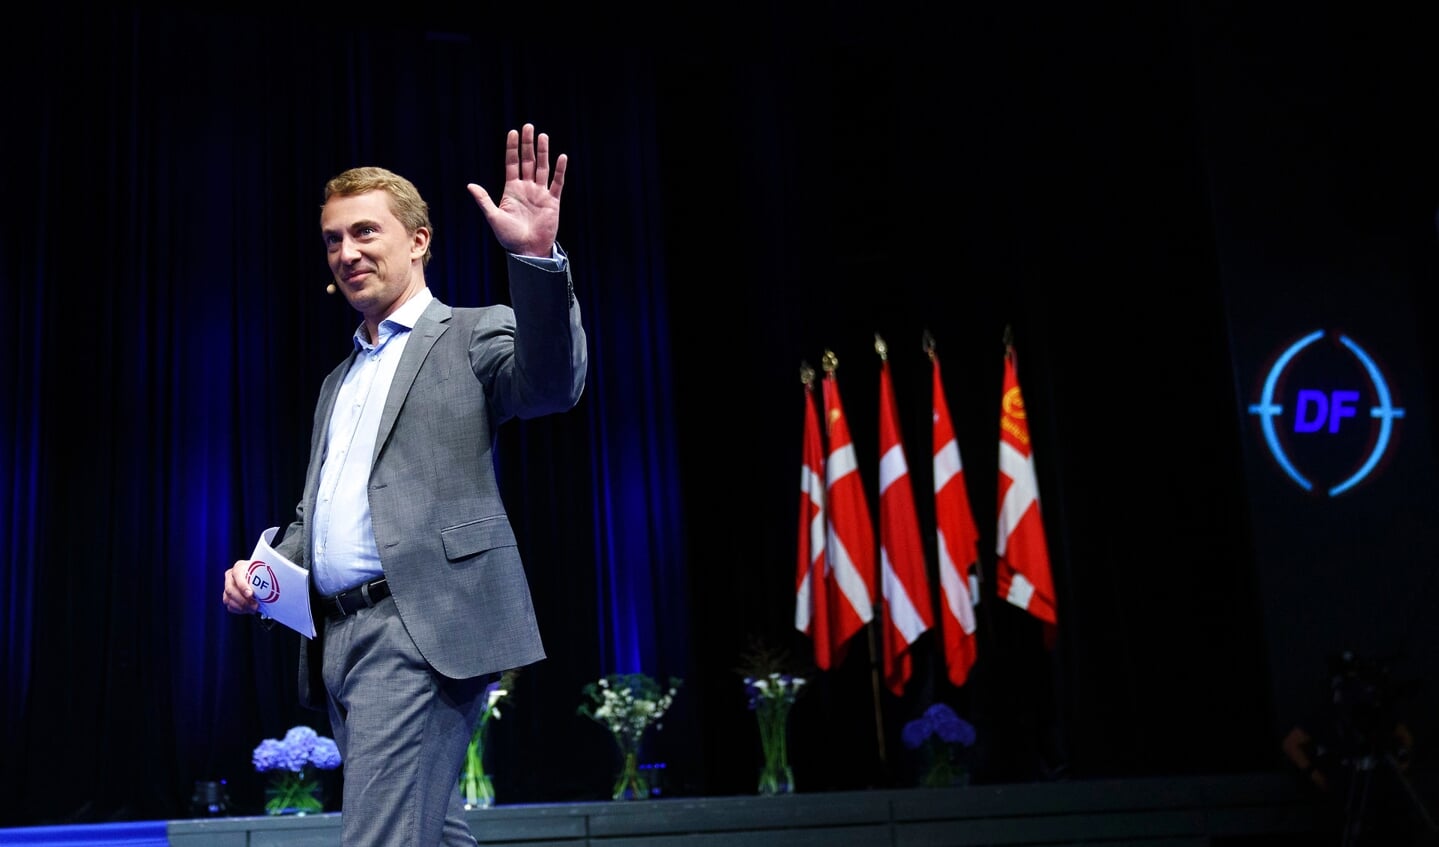 Dansk Folkeparti med formand Morten Messerschmidt risikerer at komme under spærregrænsen til folketingsvalget den 1. november.